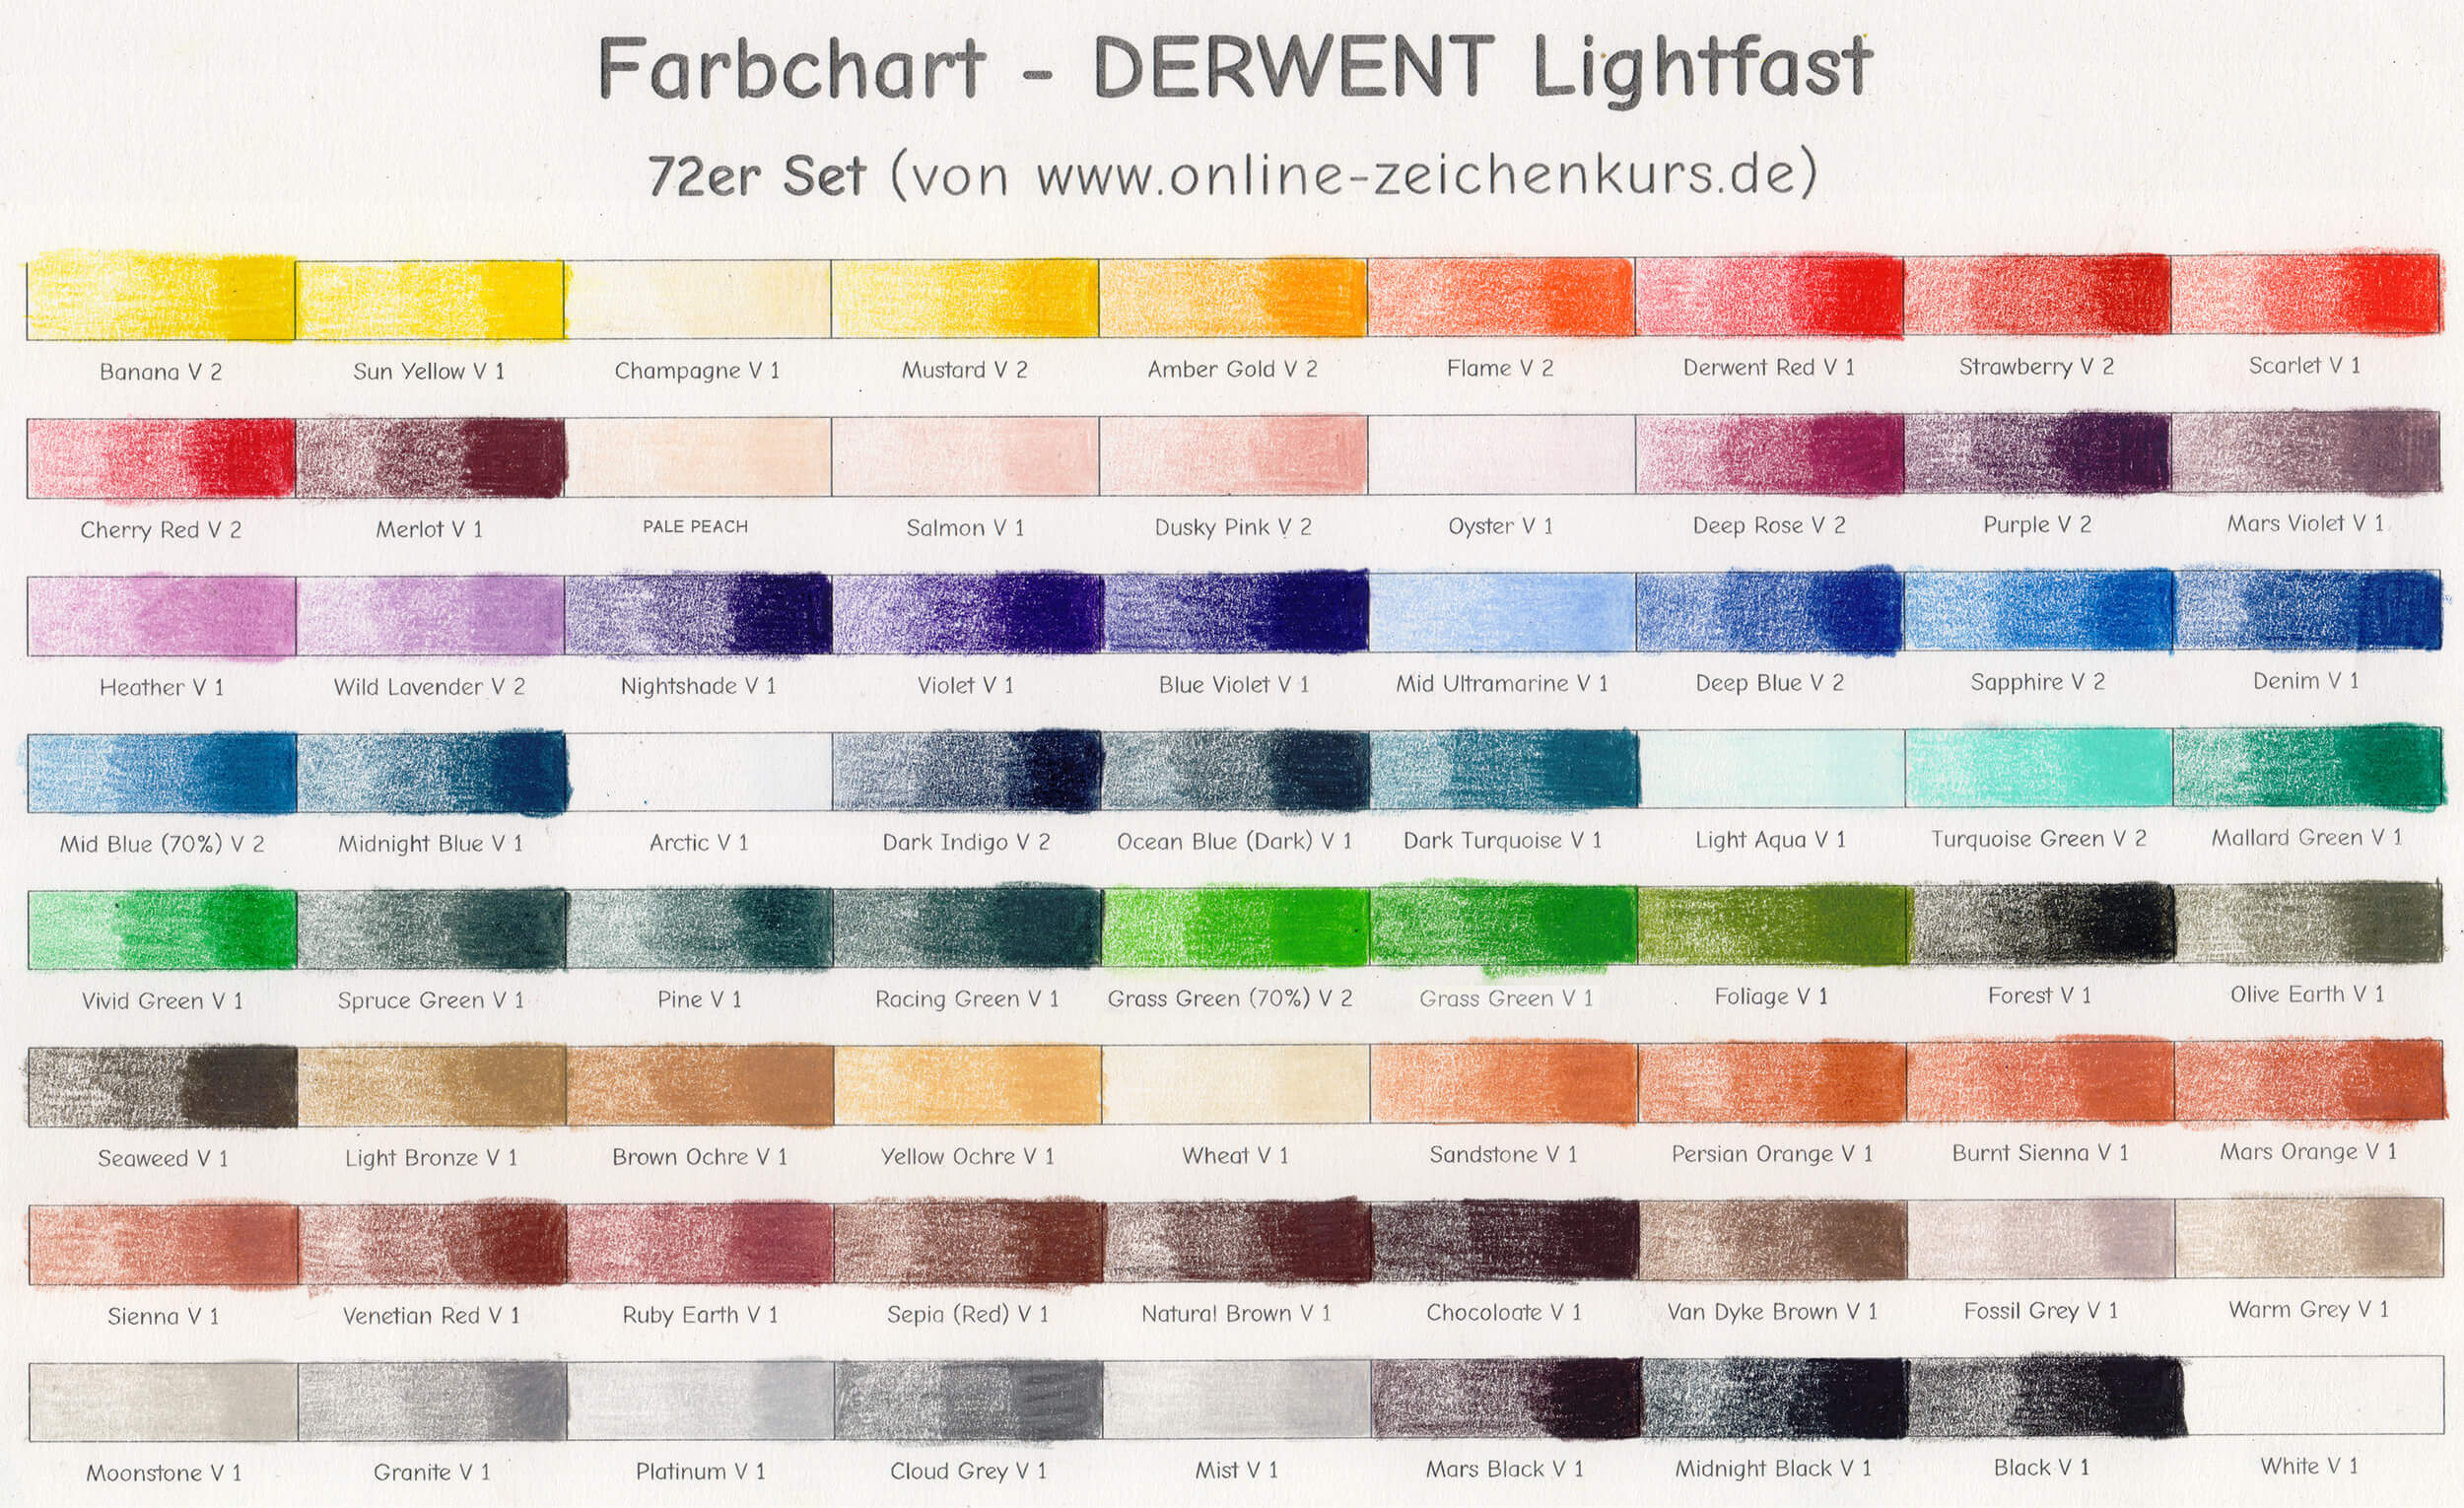 Derwent Lightfast 72er Set ausgefülltes Farbchart